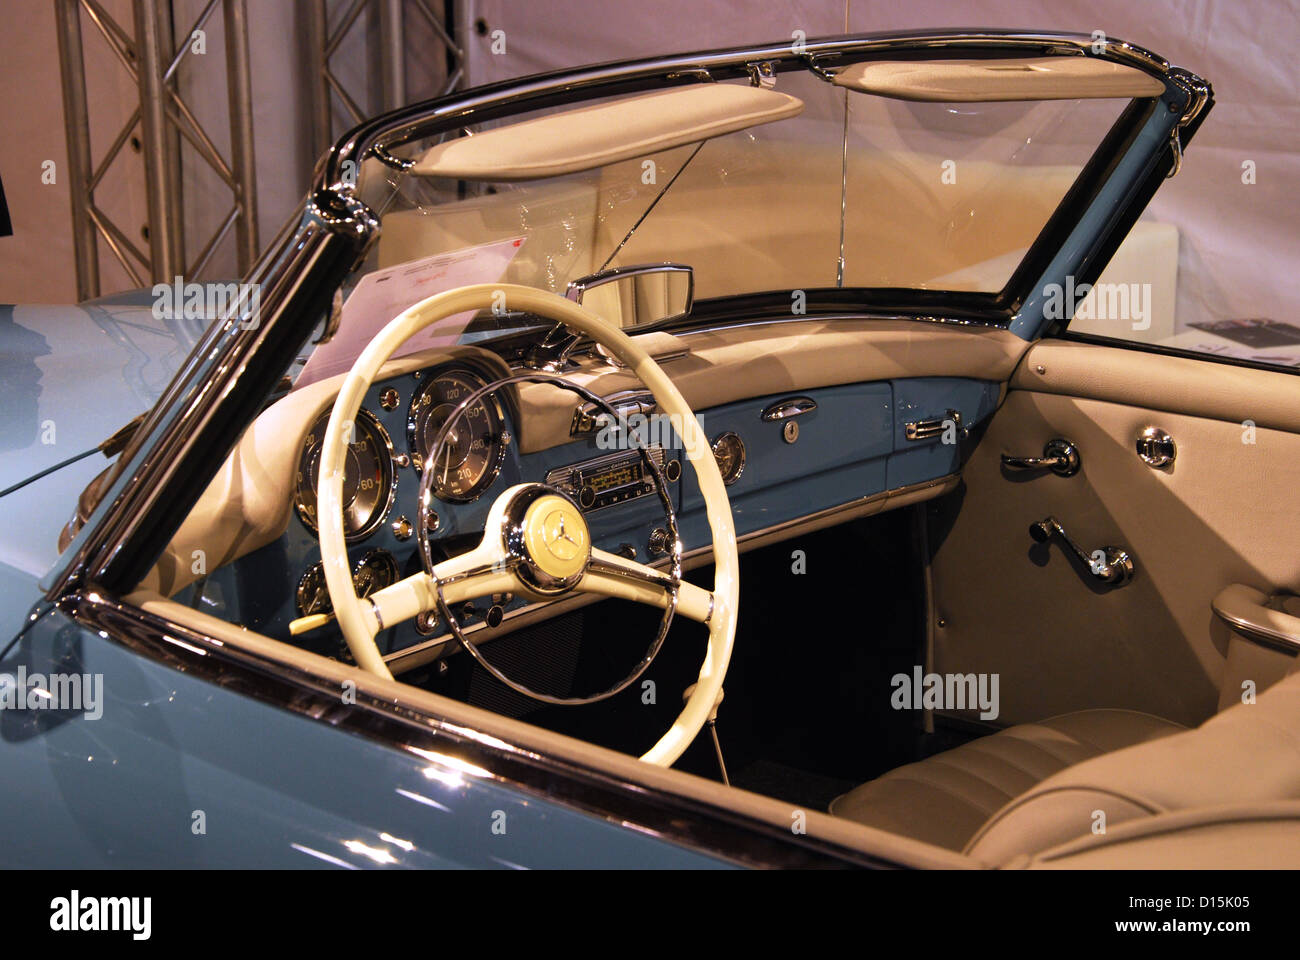 Innenraum Des Mercedes Benz 190 Sl Oldtimer Messe Maastricht Stockfotografie Alamy